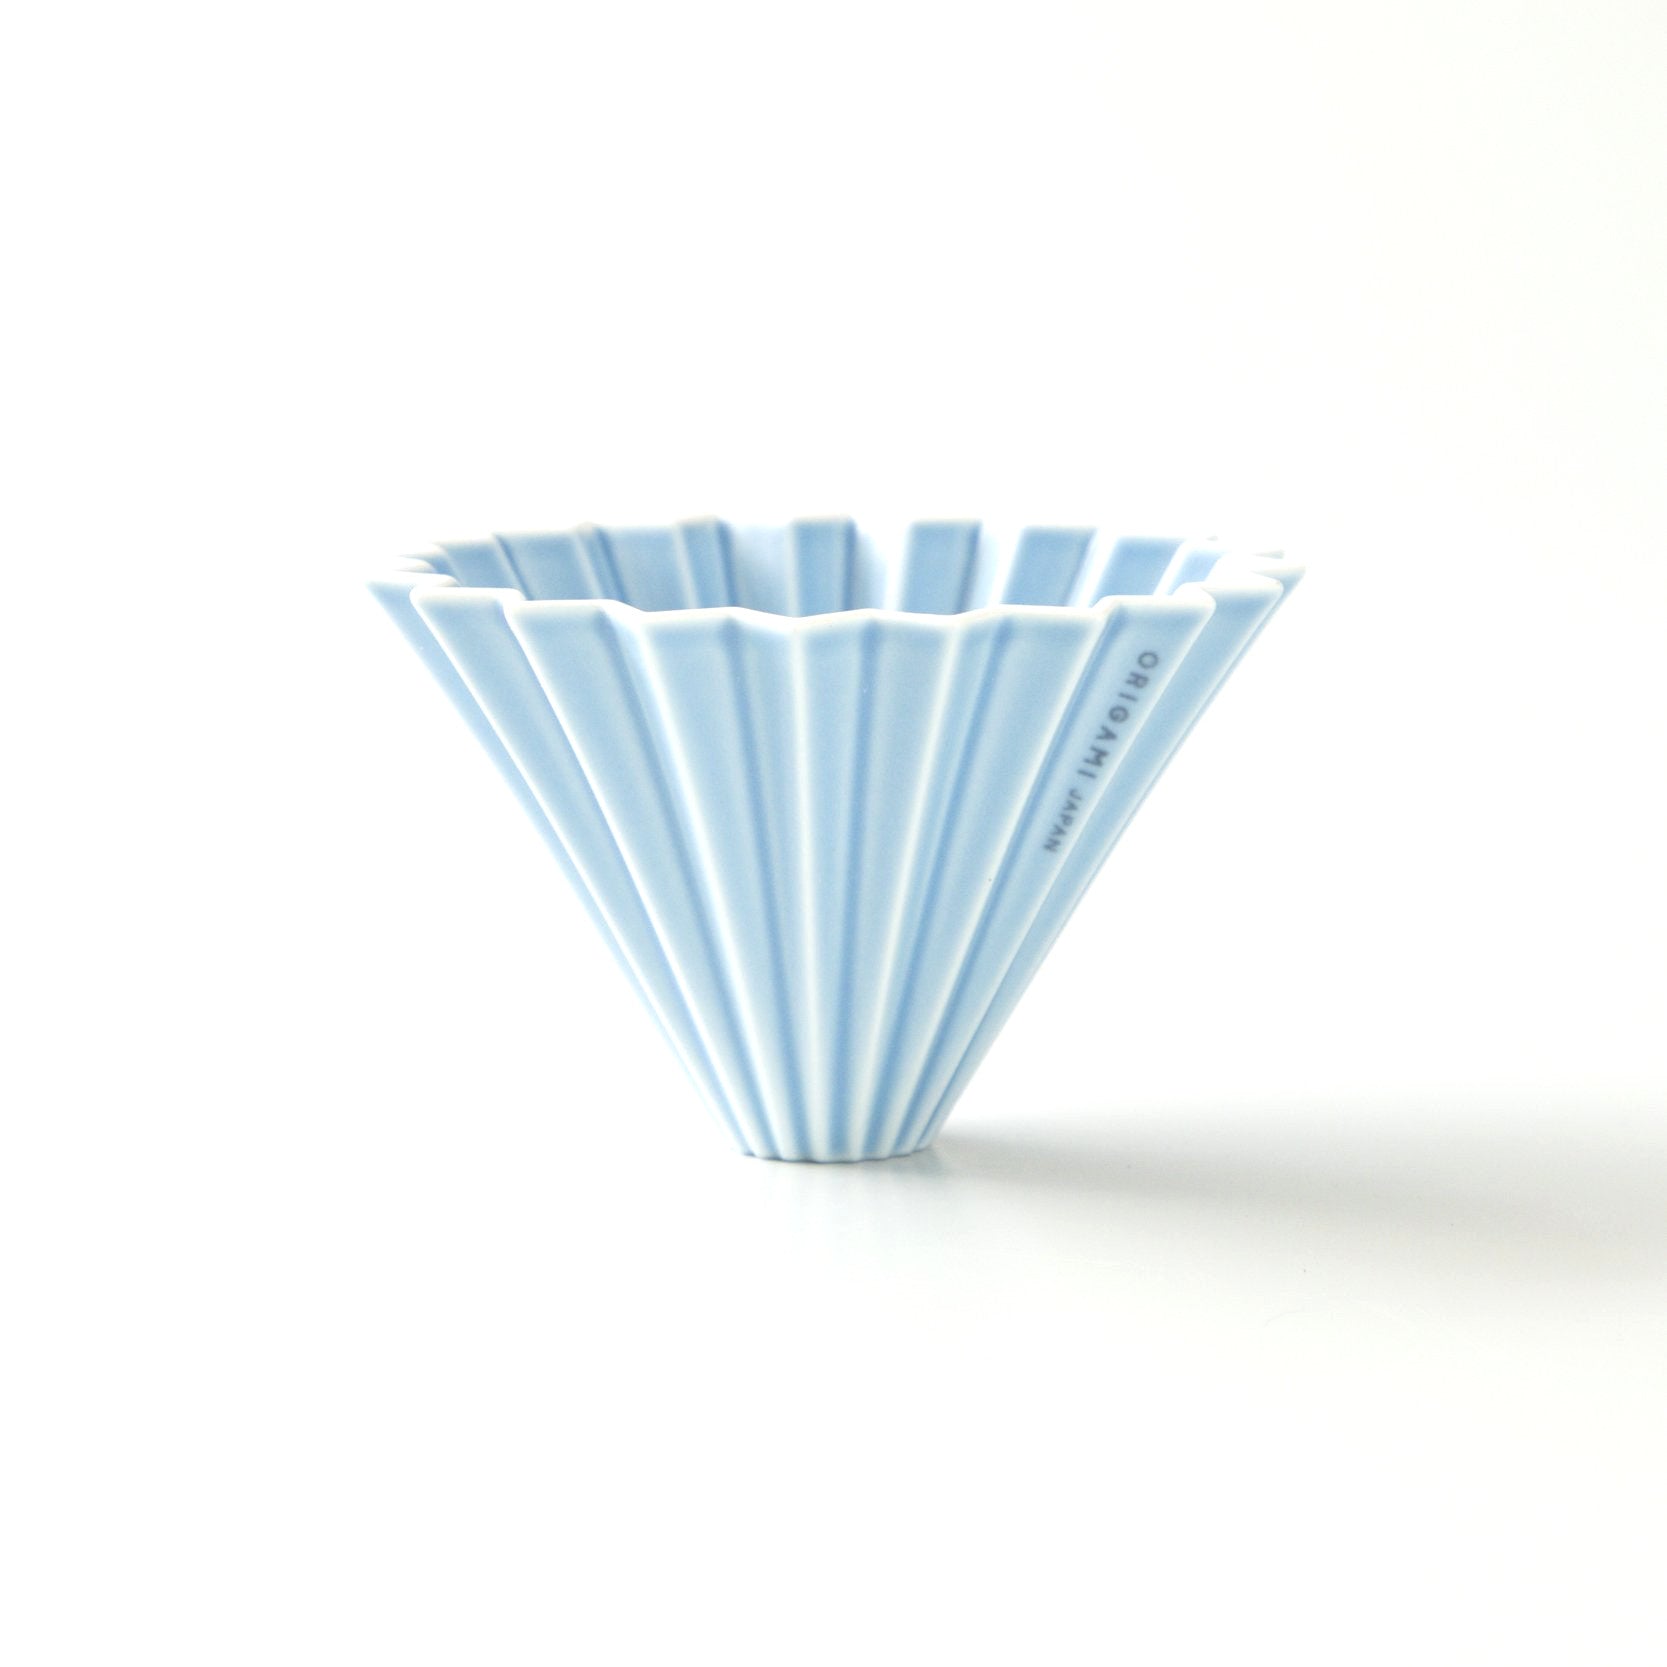 Origami medium ceramic dripper in matte blue